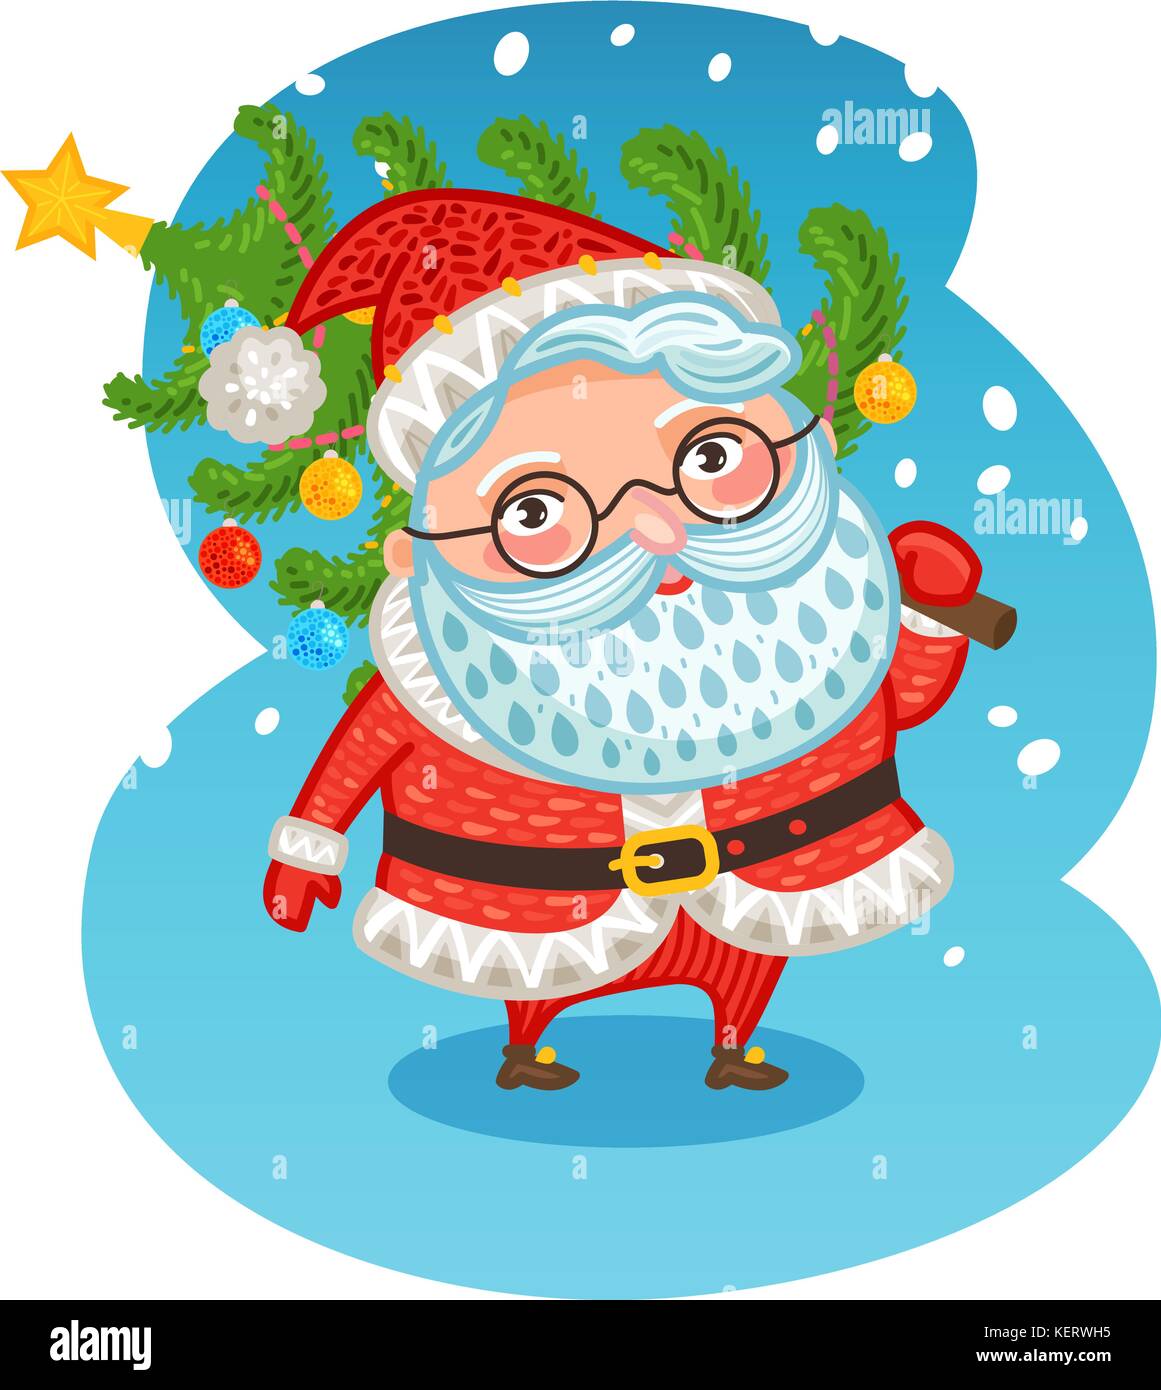 Der glückliche Weihnachtsmann trägt einen Weihnachtsbaum. Weihnachtsvektor-Illustration Stock Vektor